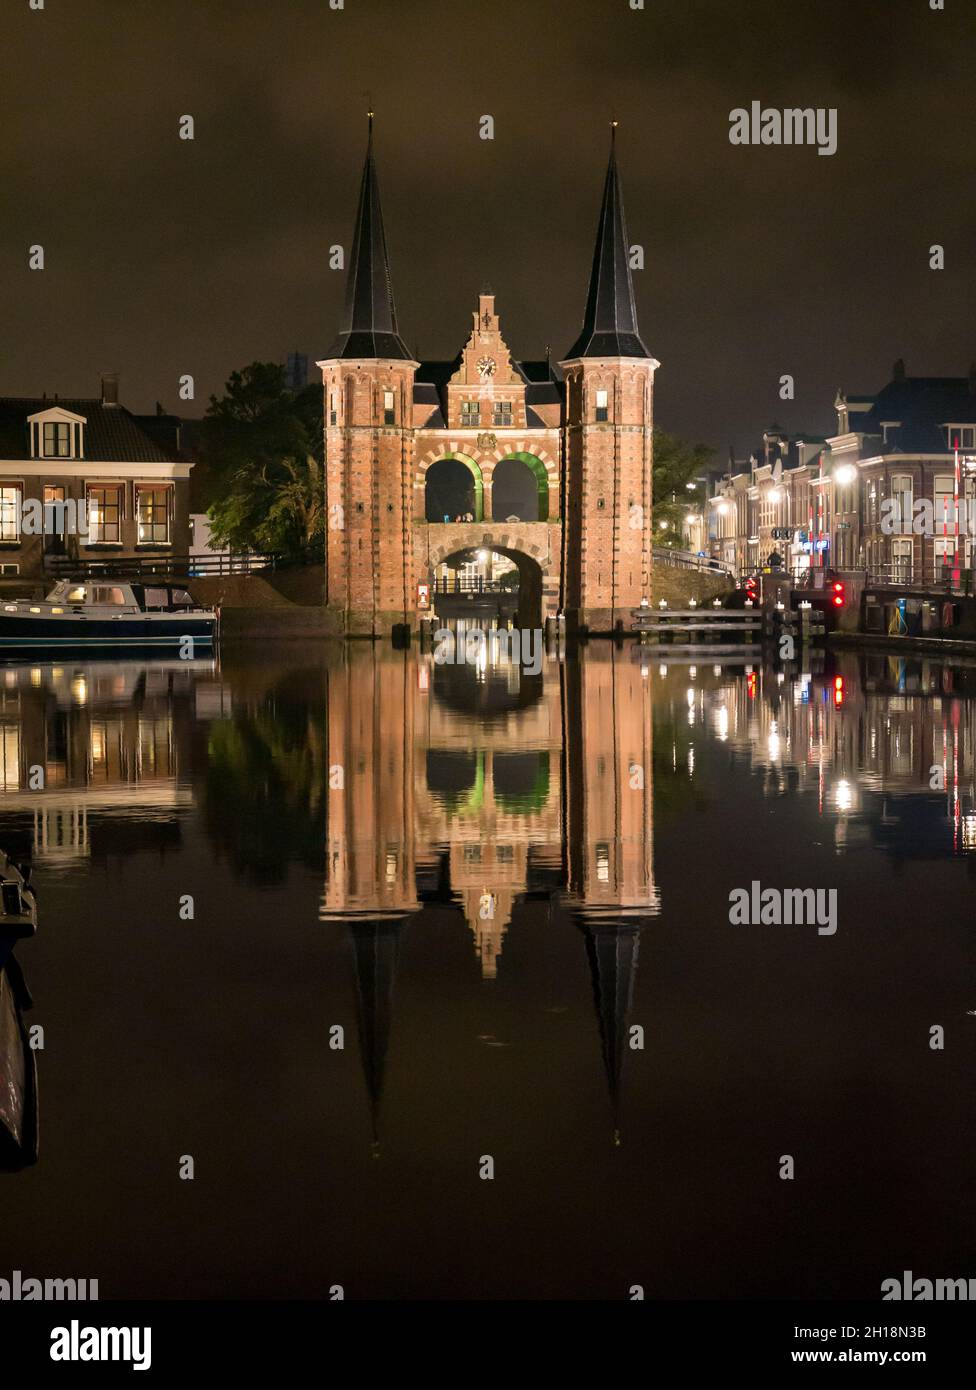 Waterpoort, porte d'eau, et canal de Kolk dans la ville de Snits, Sneek à Friesland, pays-Bas Banque D'Images